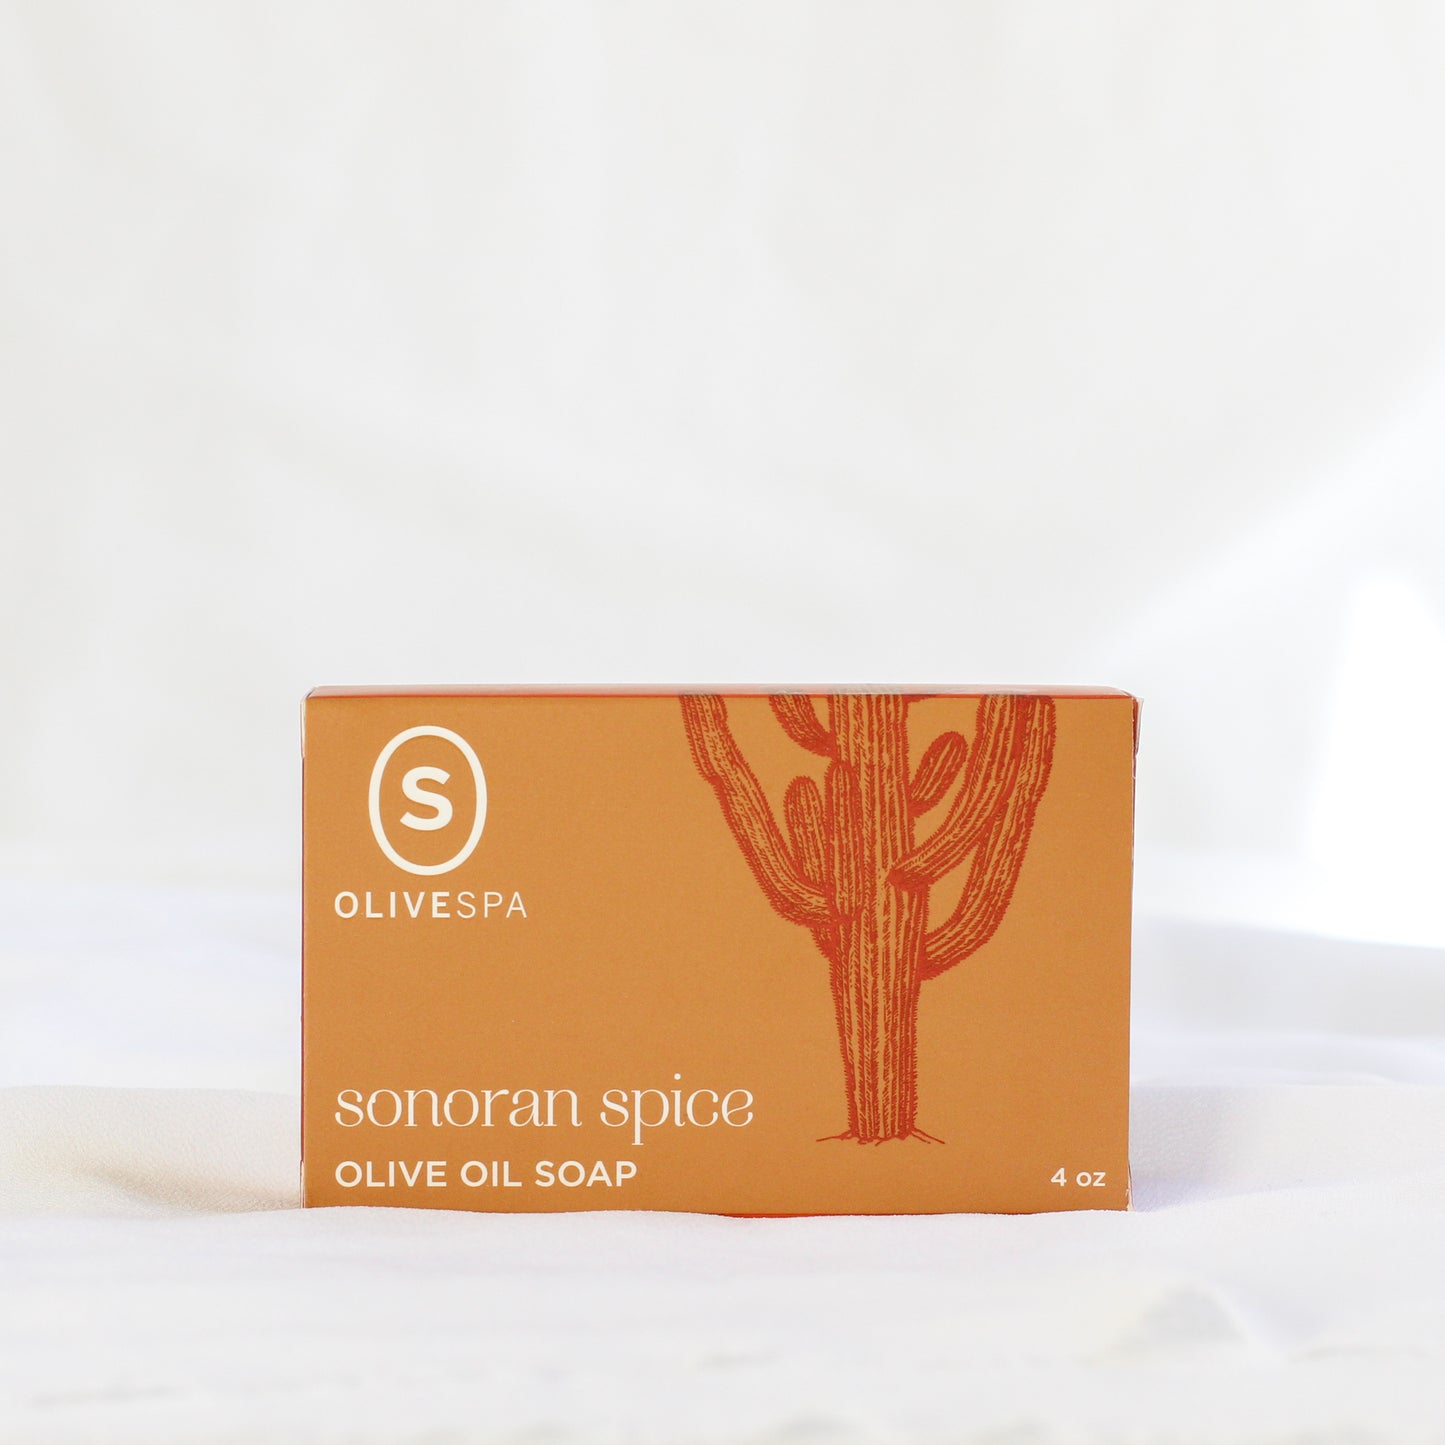 Sonoran Spice Olive Oil Soap